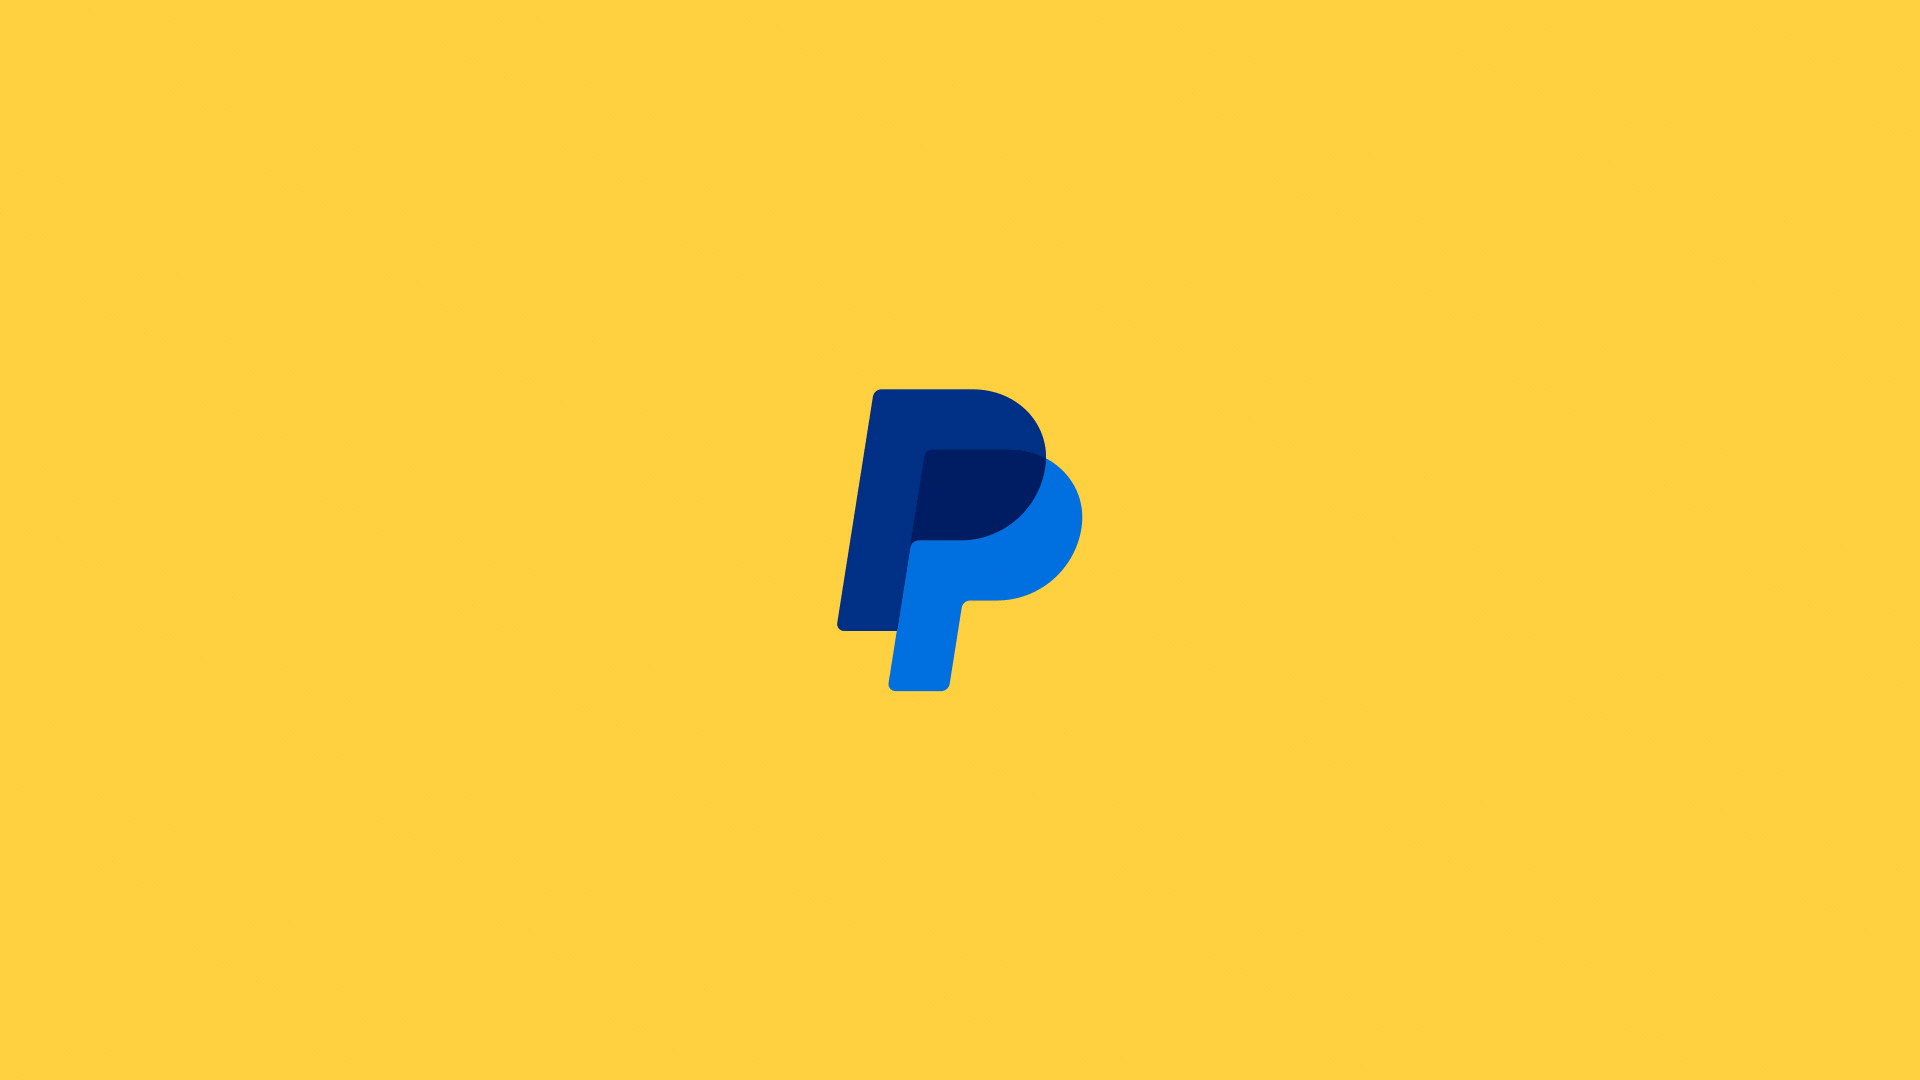 Fern_PayPal_Portal_Logo_16x9_YellowBG.gif